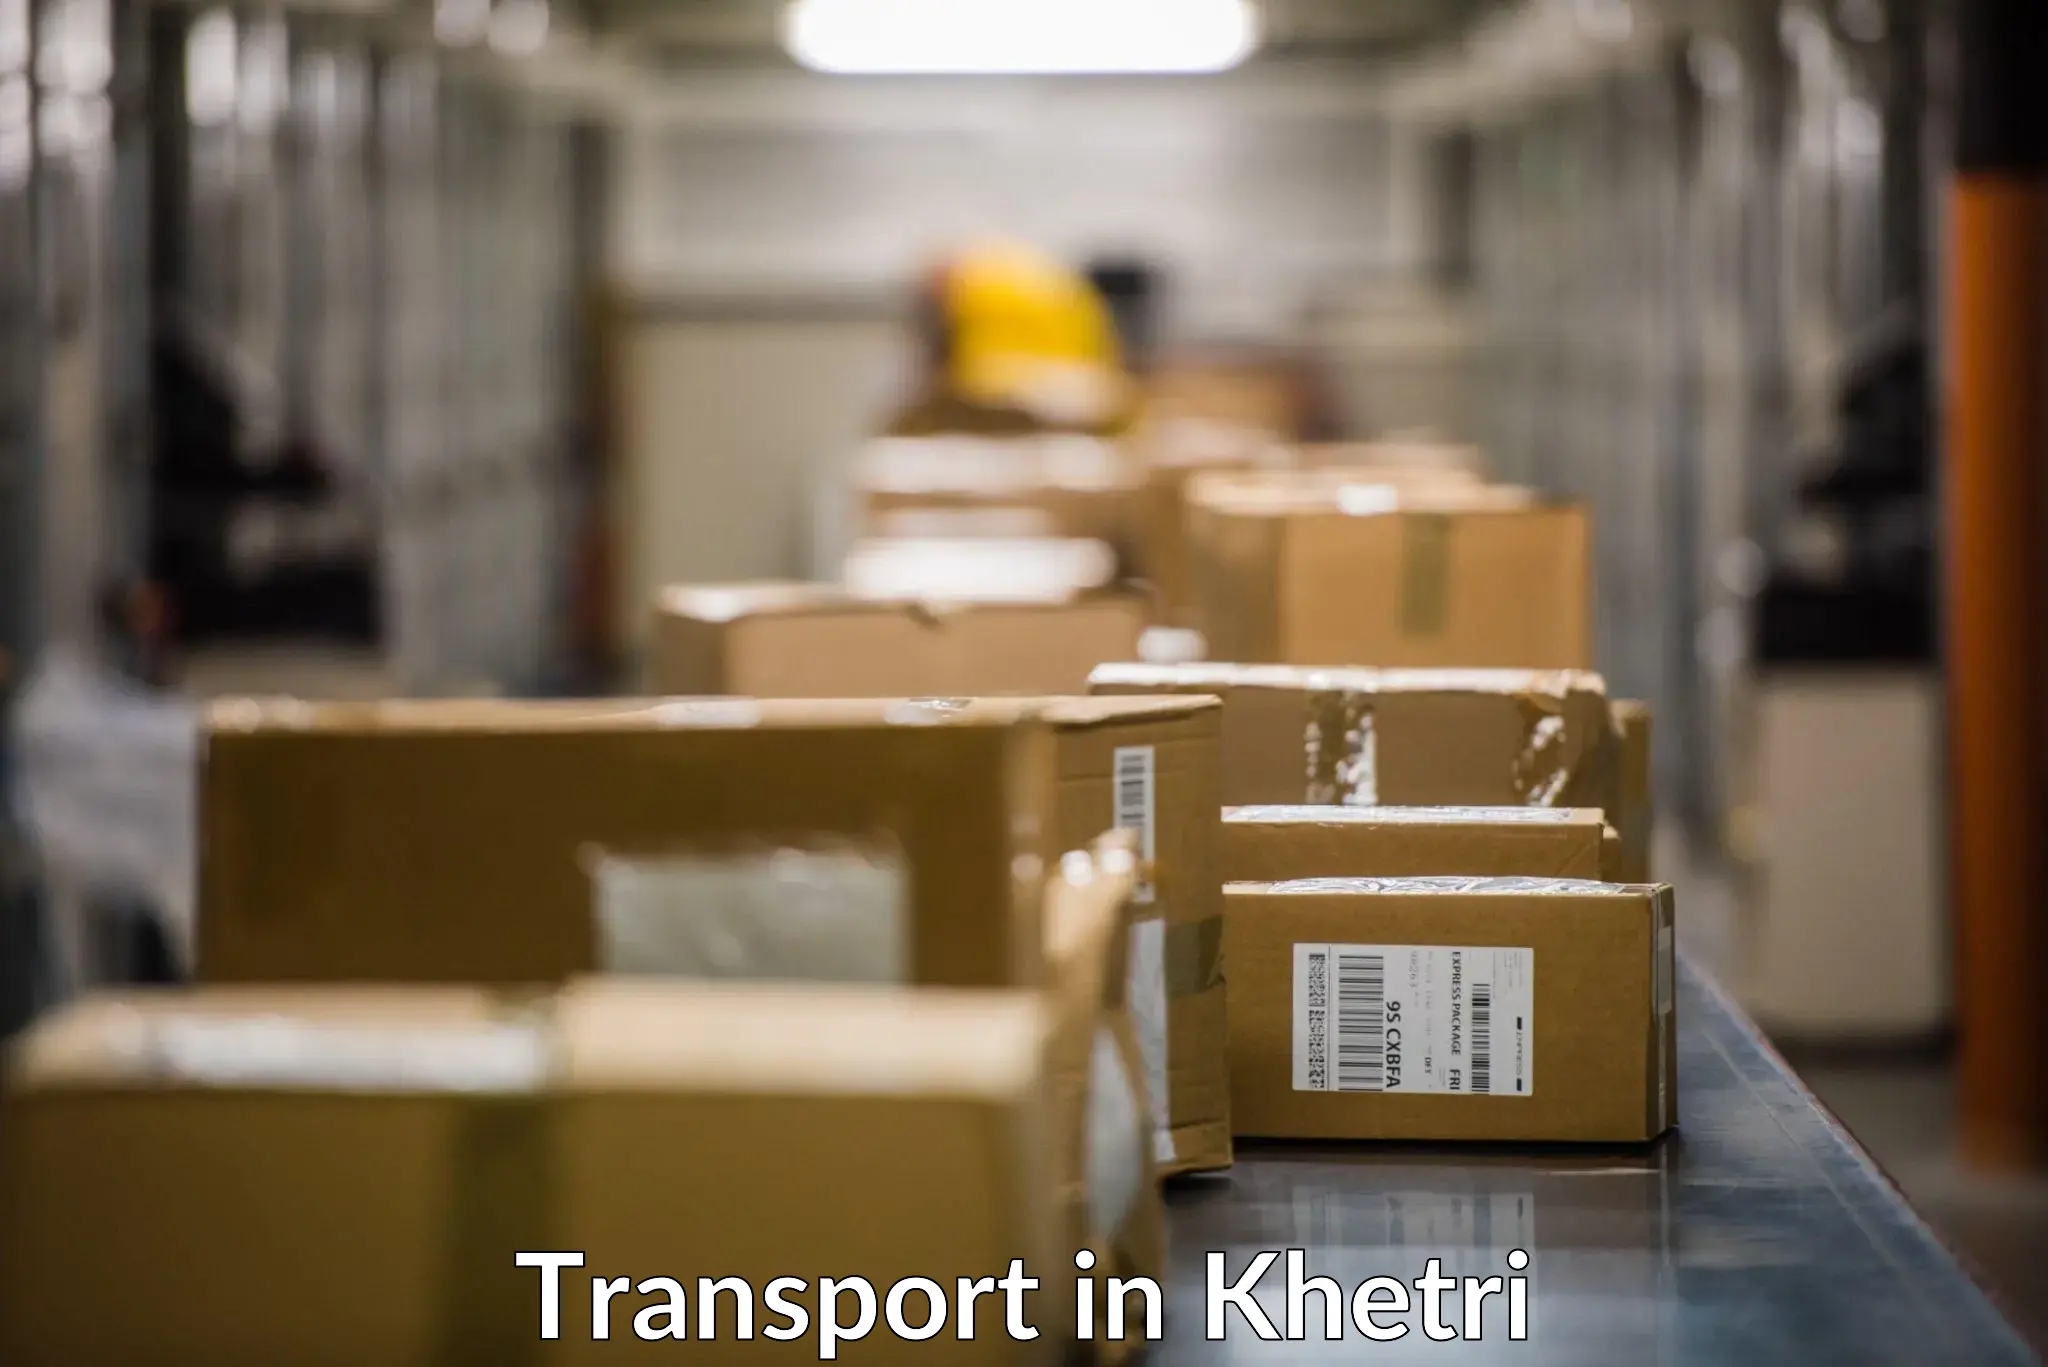 Intercity goods transport in Khetri